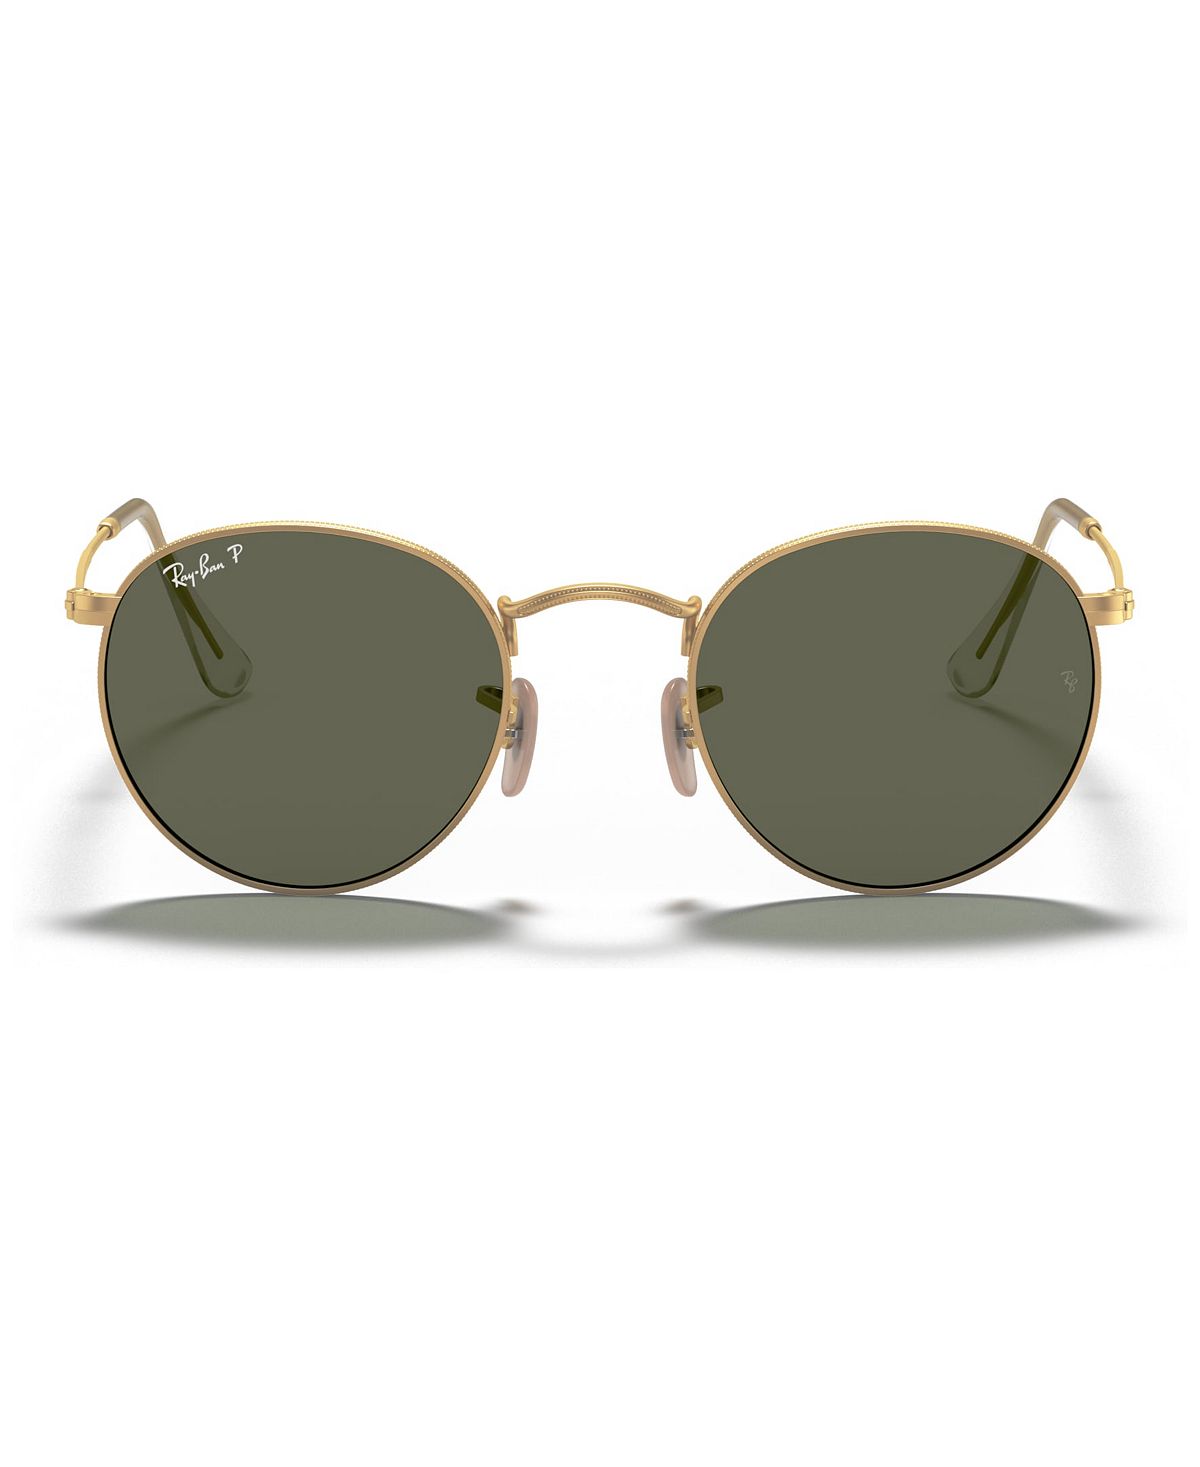 Поляризованные солнцезащитные очки, rb3447 круглый металл Ray-Ban, мульти